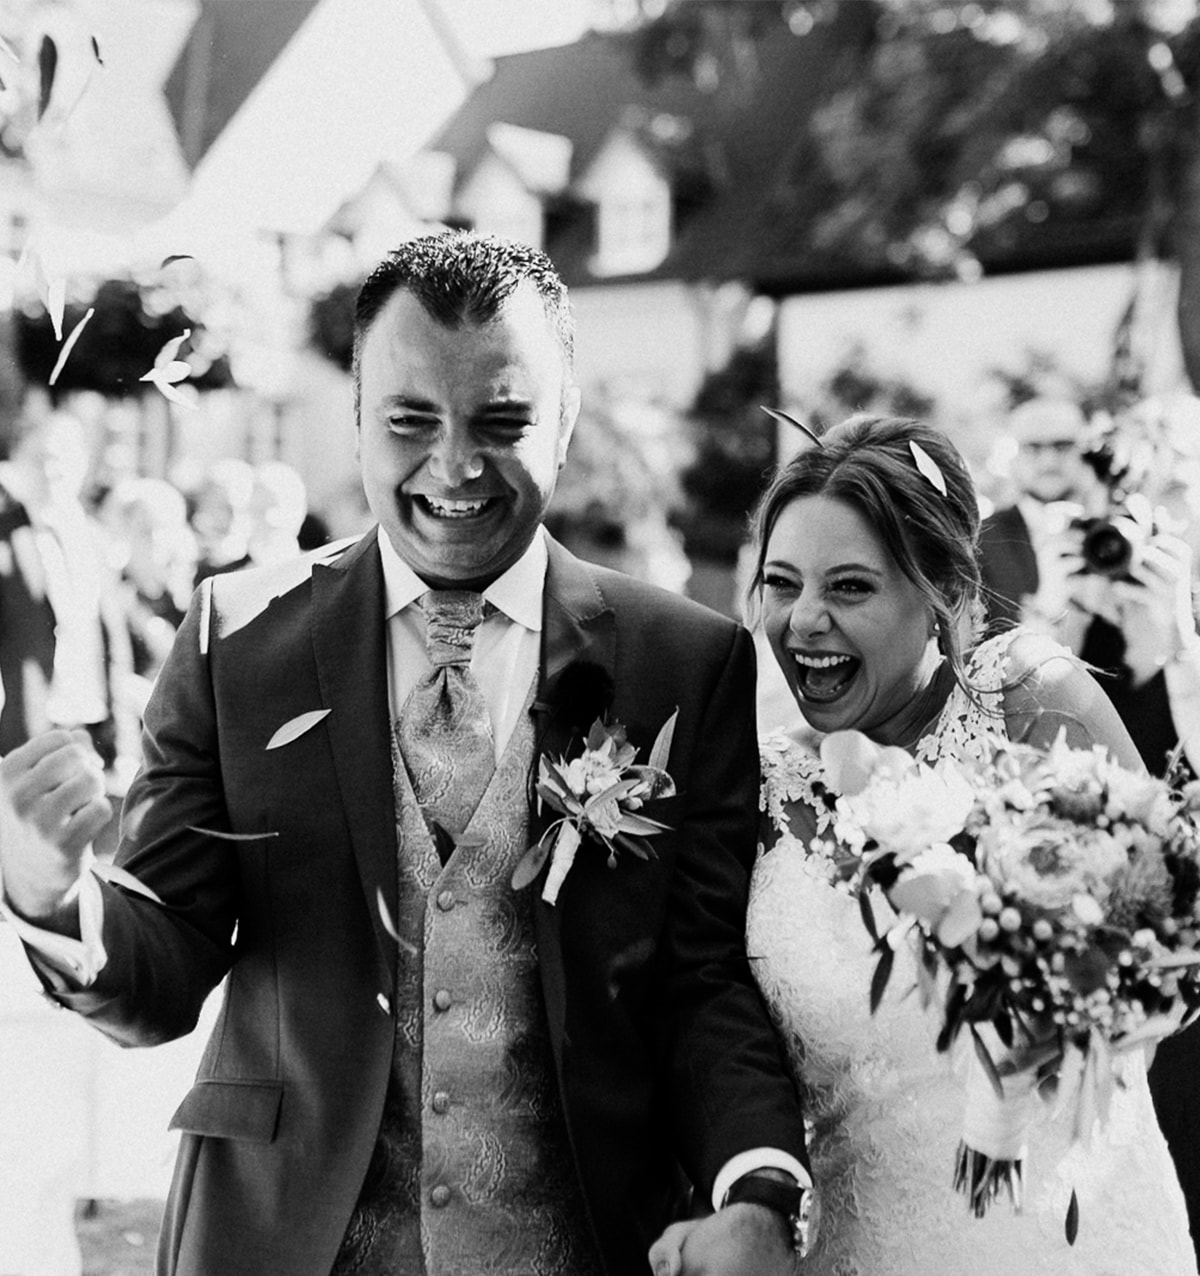 Dein Hochzeitsfotograf auf der Viermastbark Passat — Stefanie Roth